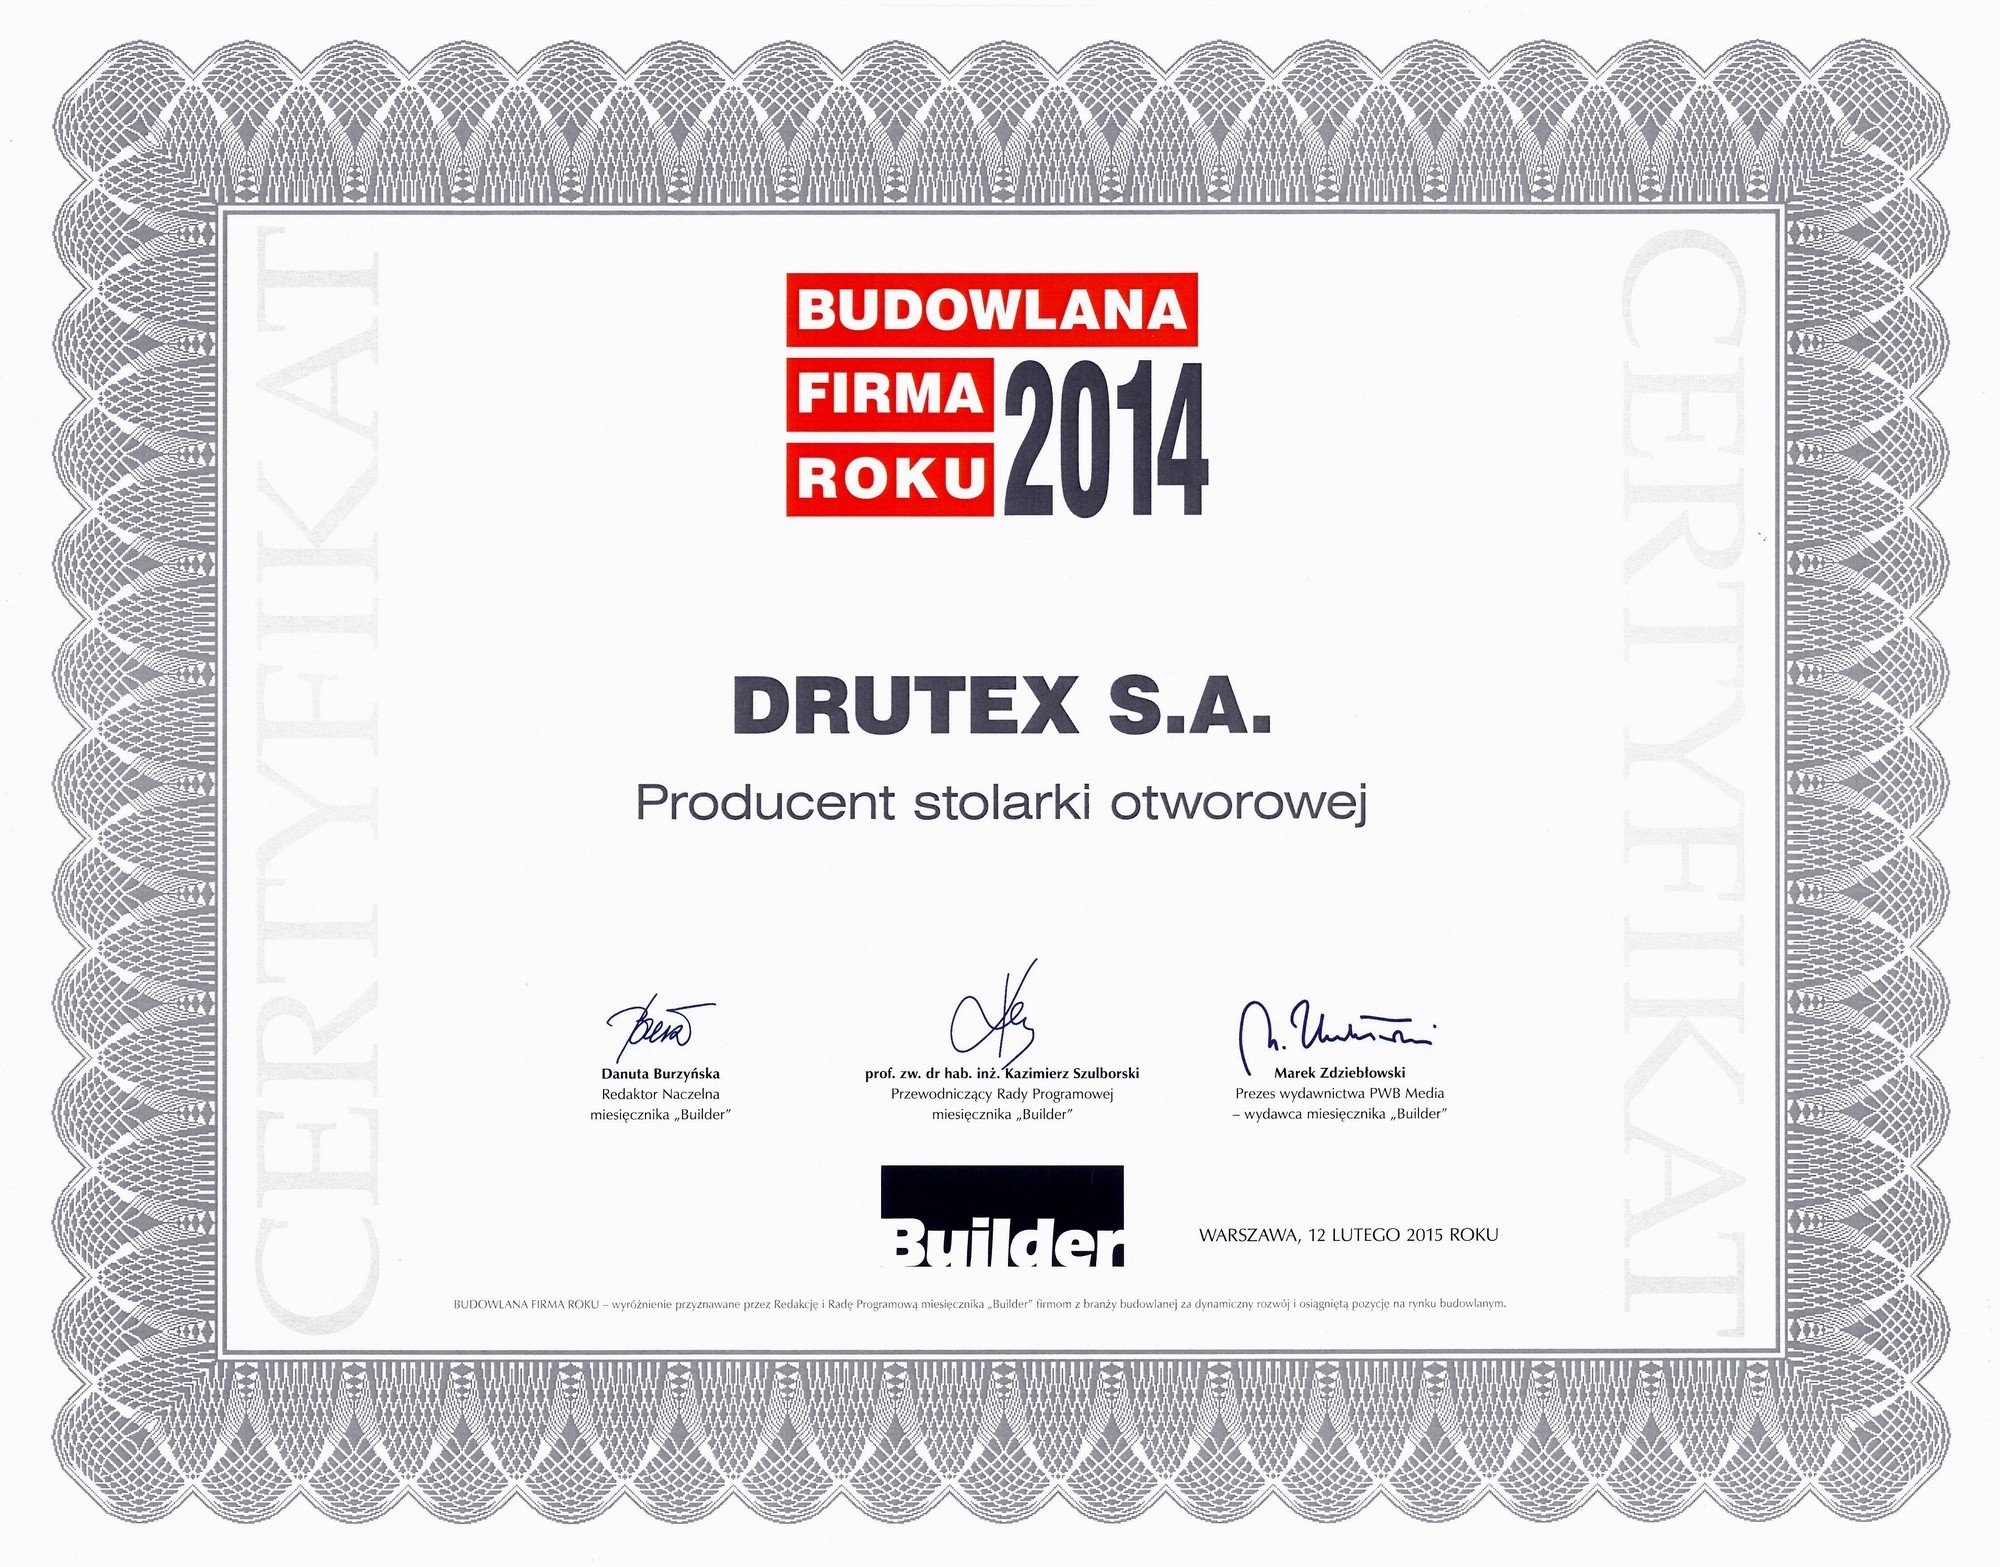 DRUTEX stavební firma roku!